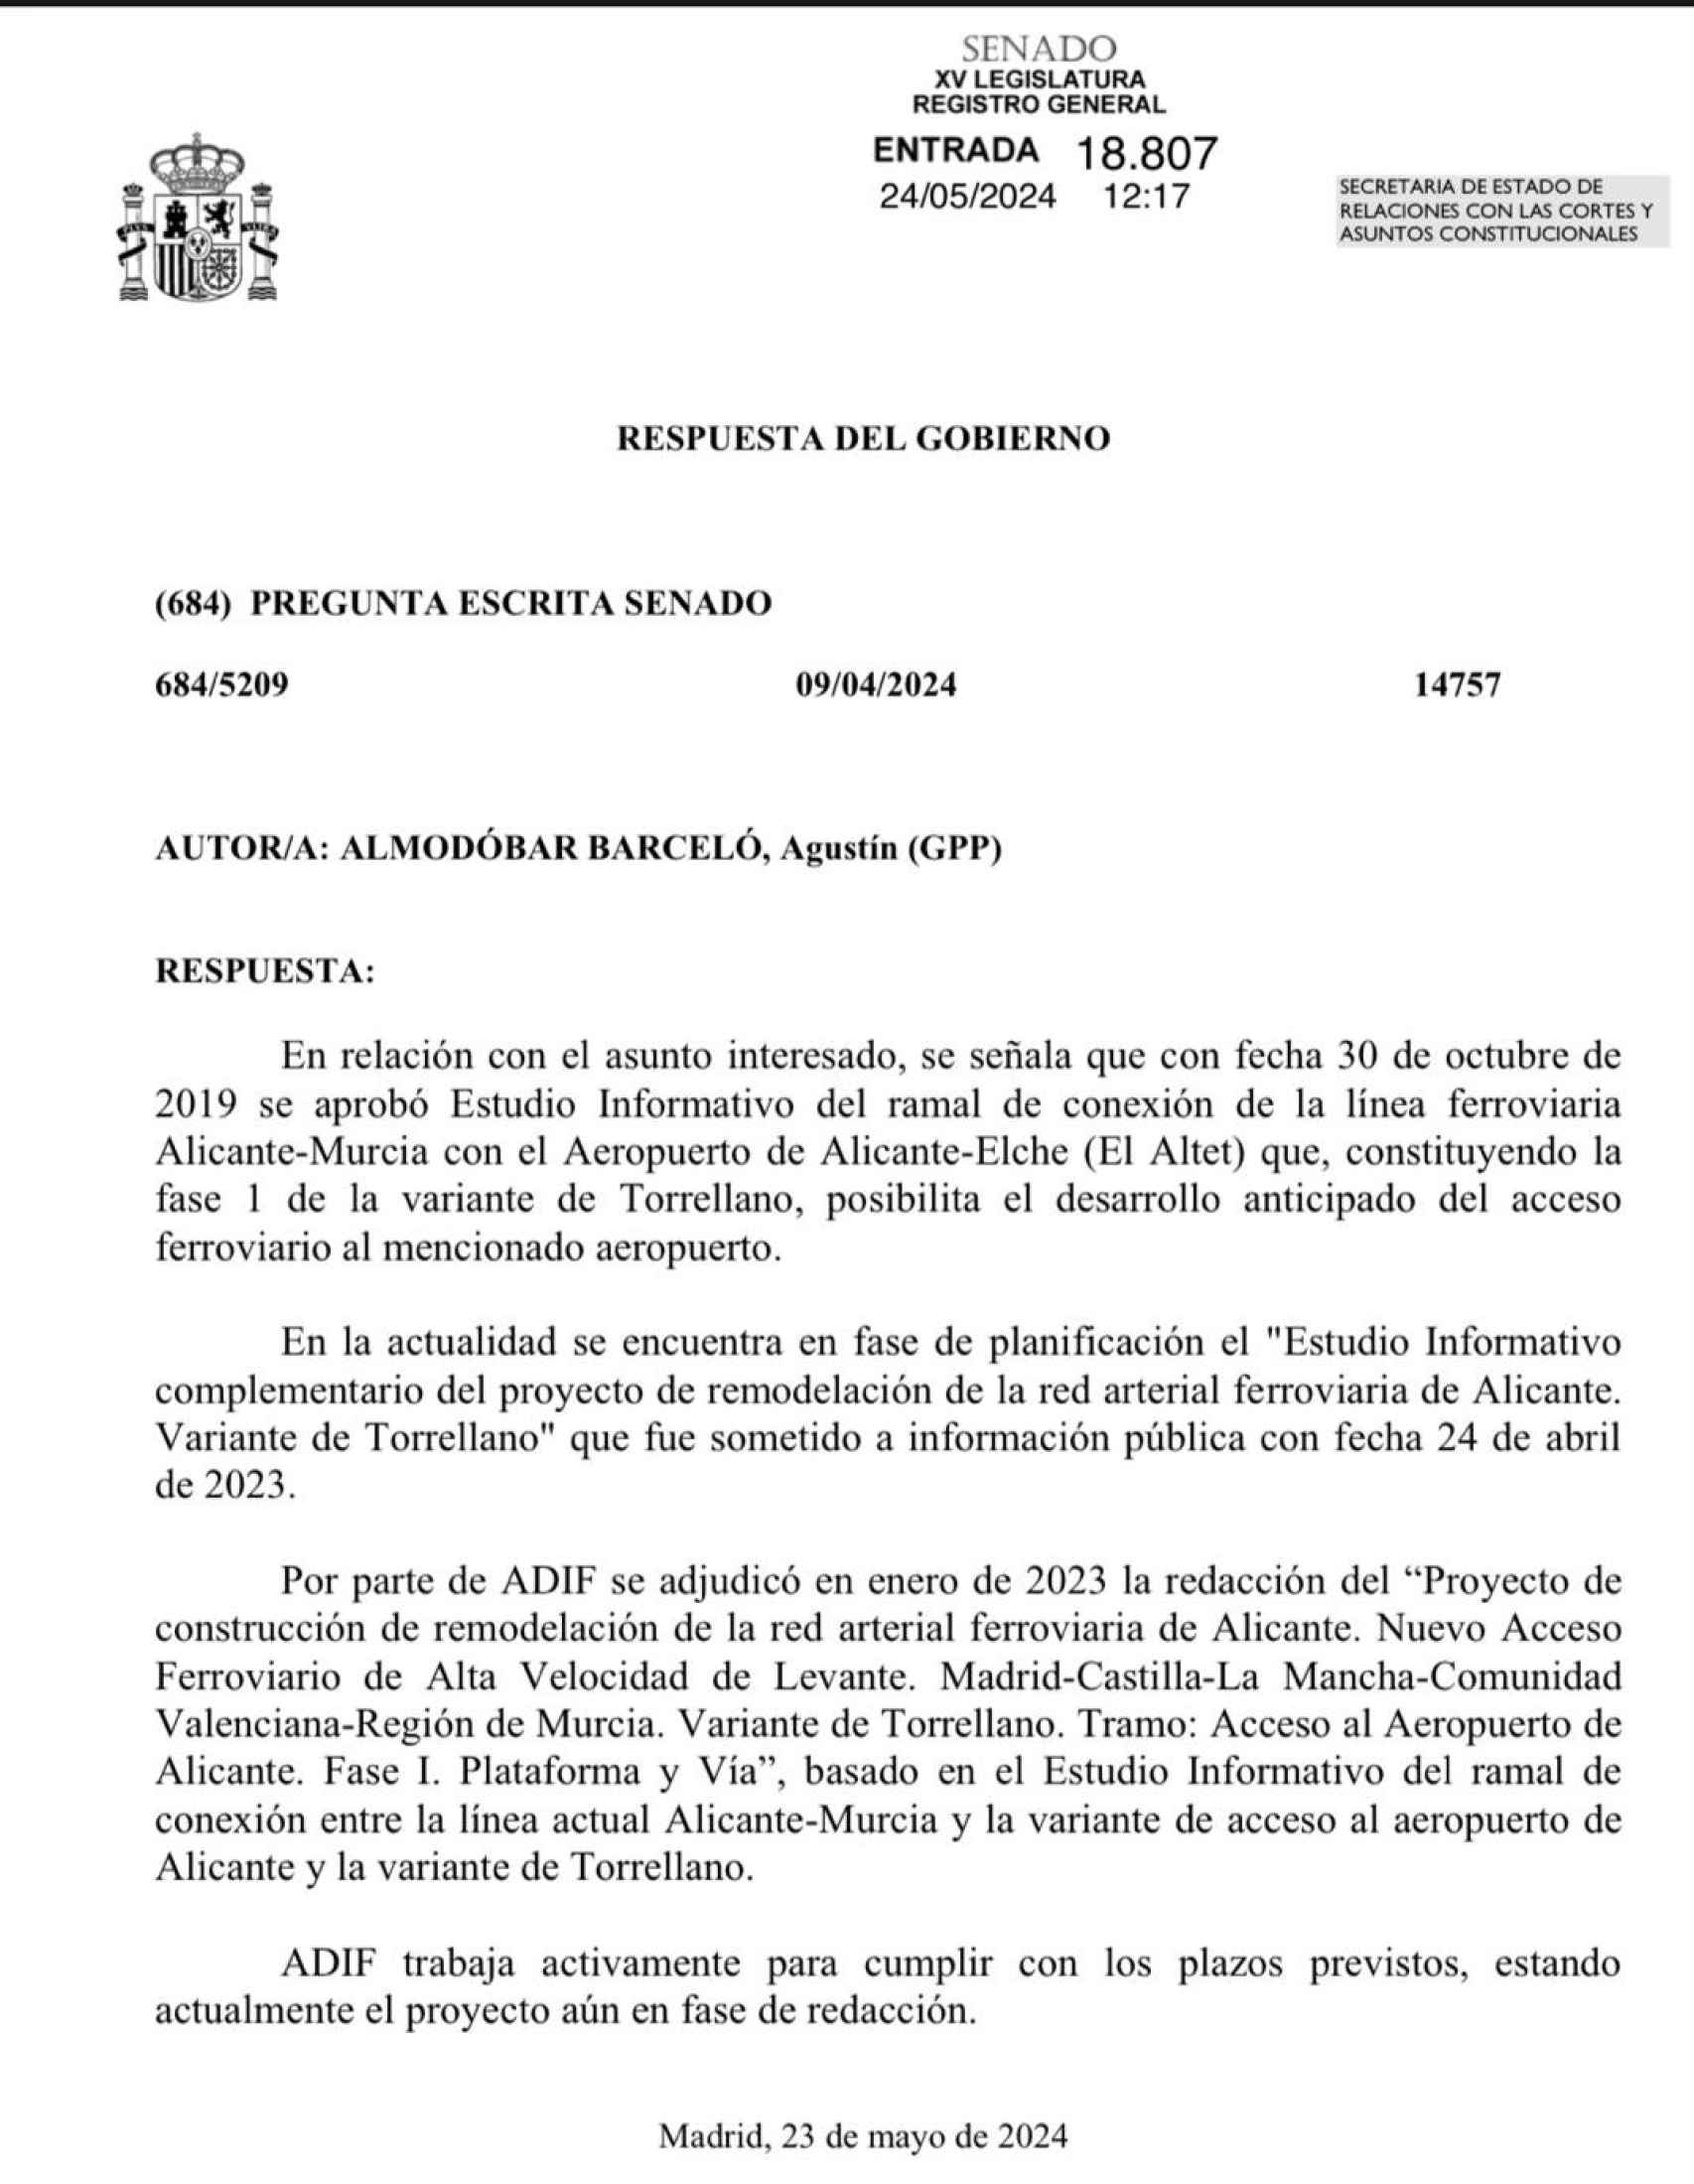 Respuesta del Gobierno al senador Agustín Almodóbar.